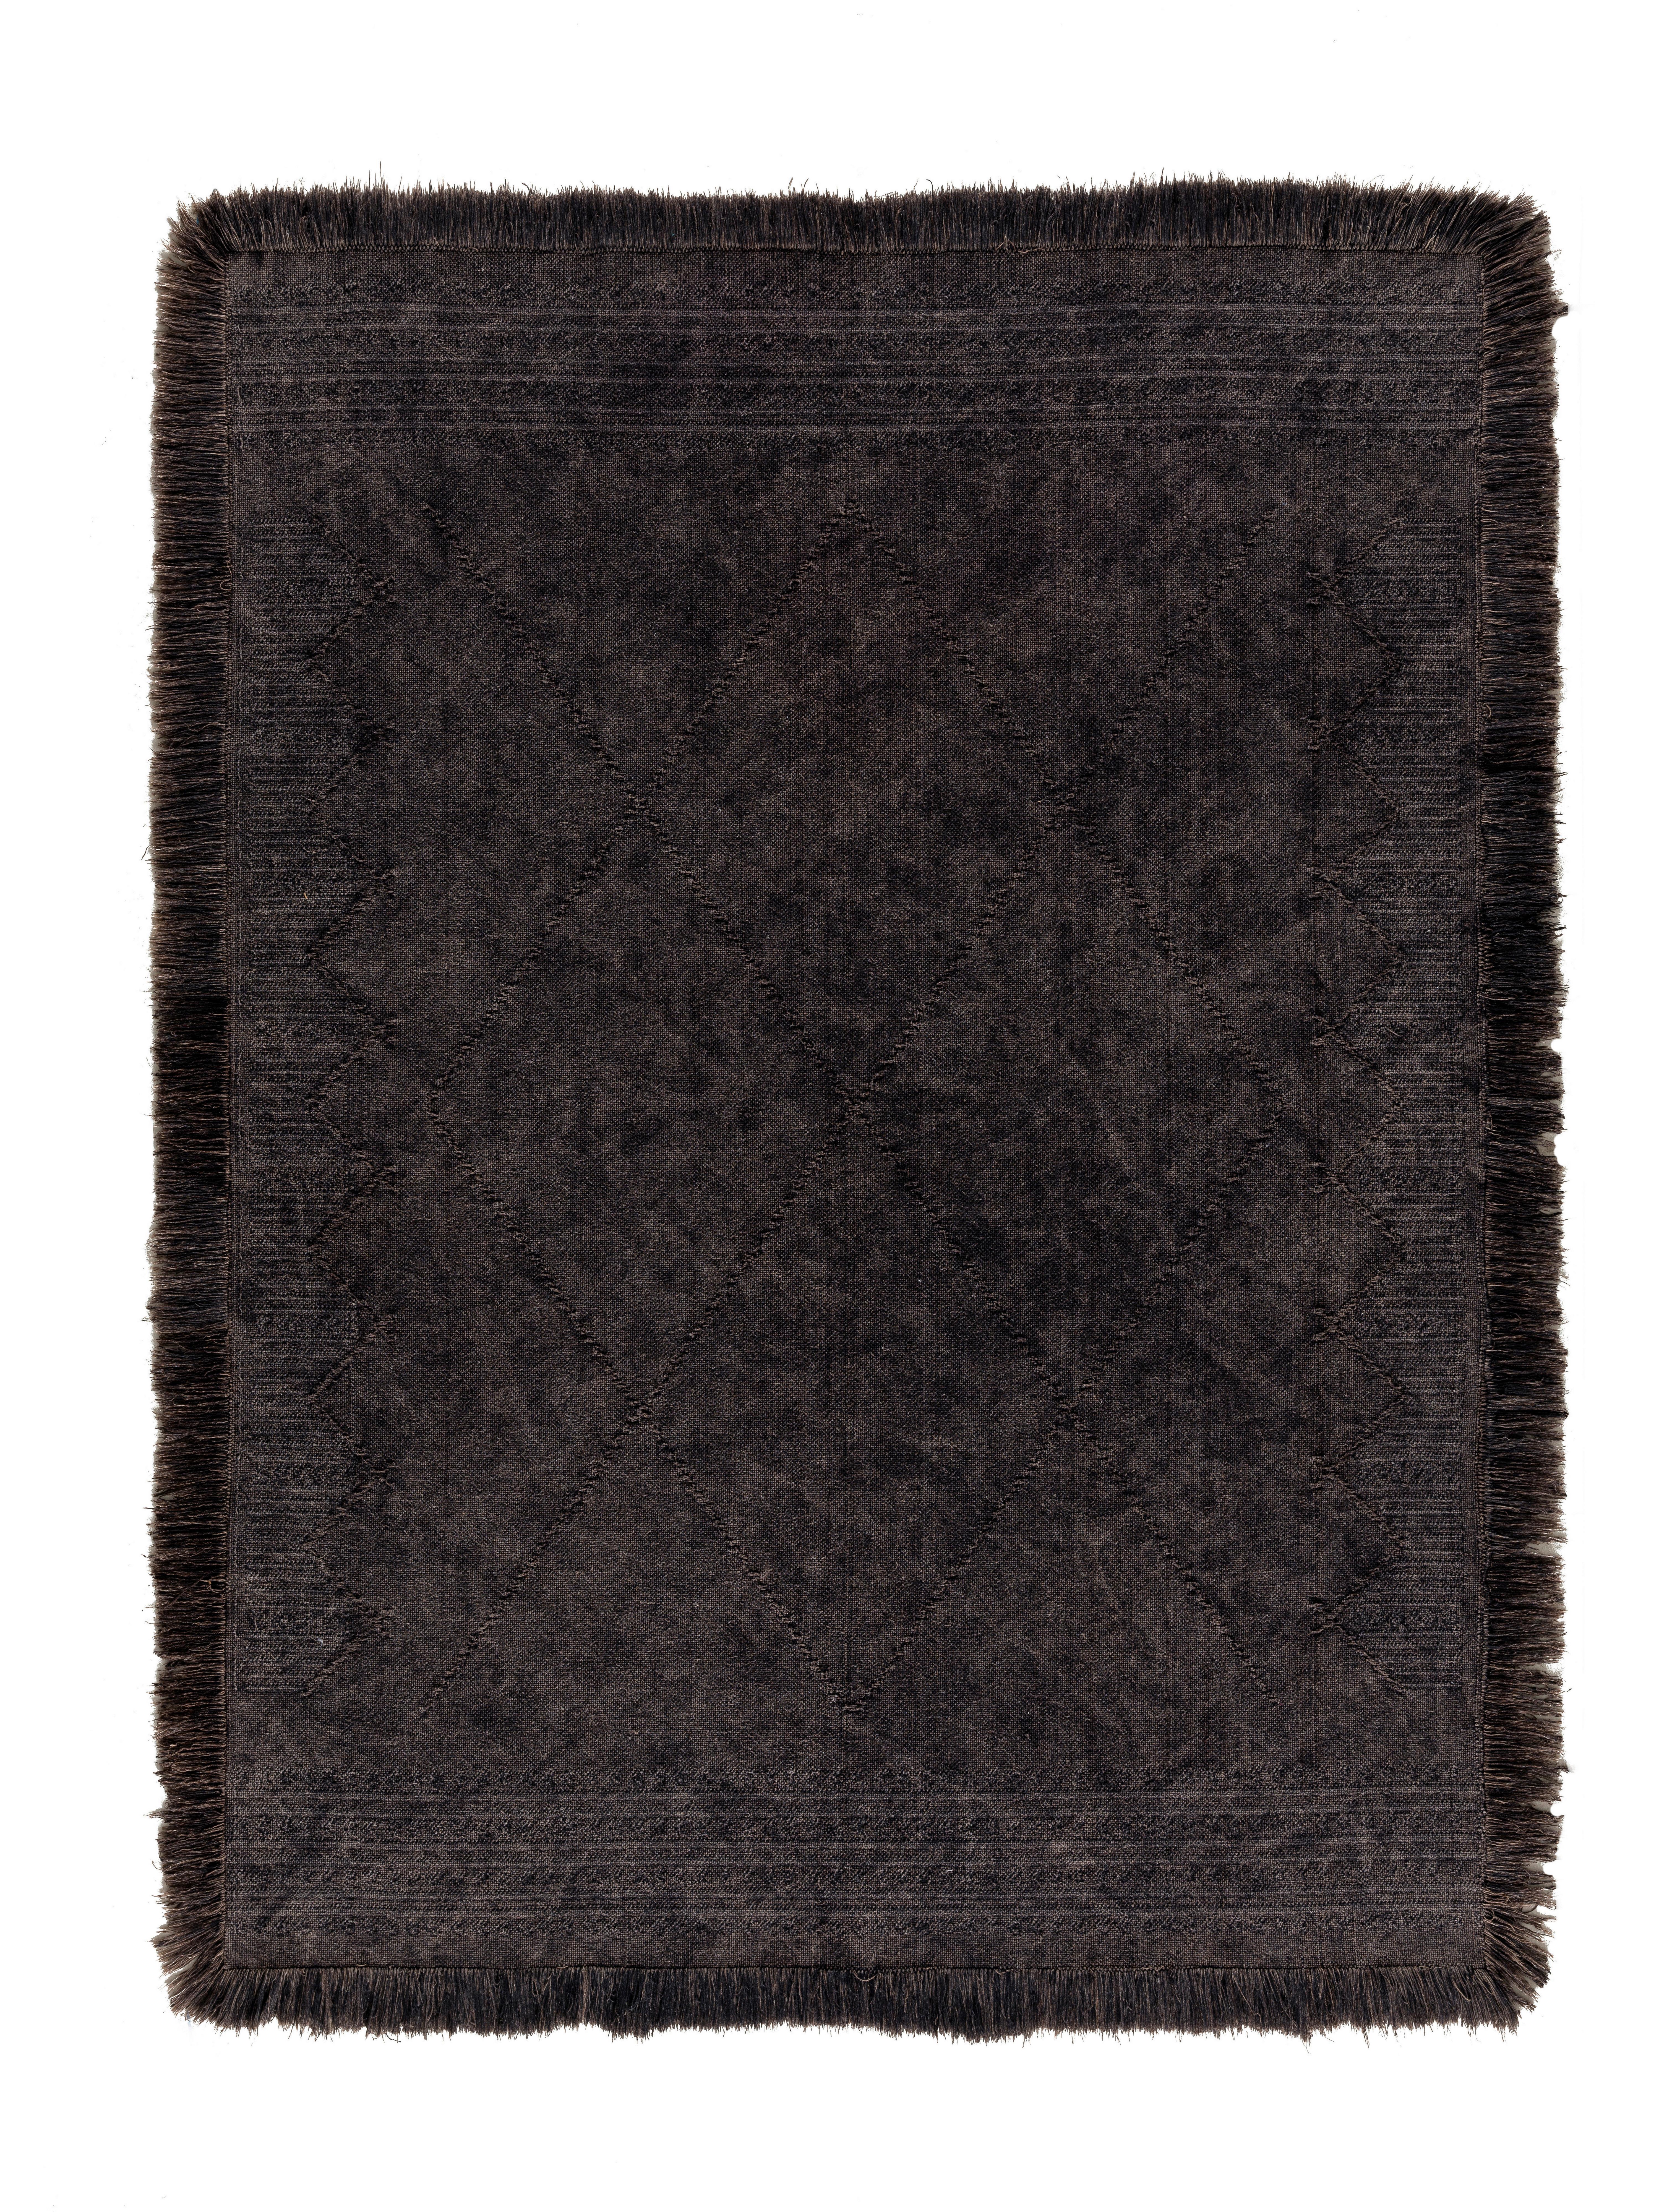 Ručne Tkaný Koberec Monaco 3, 160/230cm, Antracit - antracitová, textil (160/230cm) - Modern Living